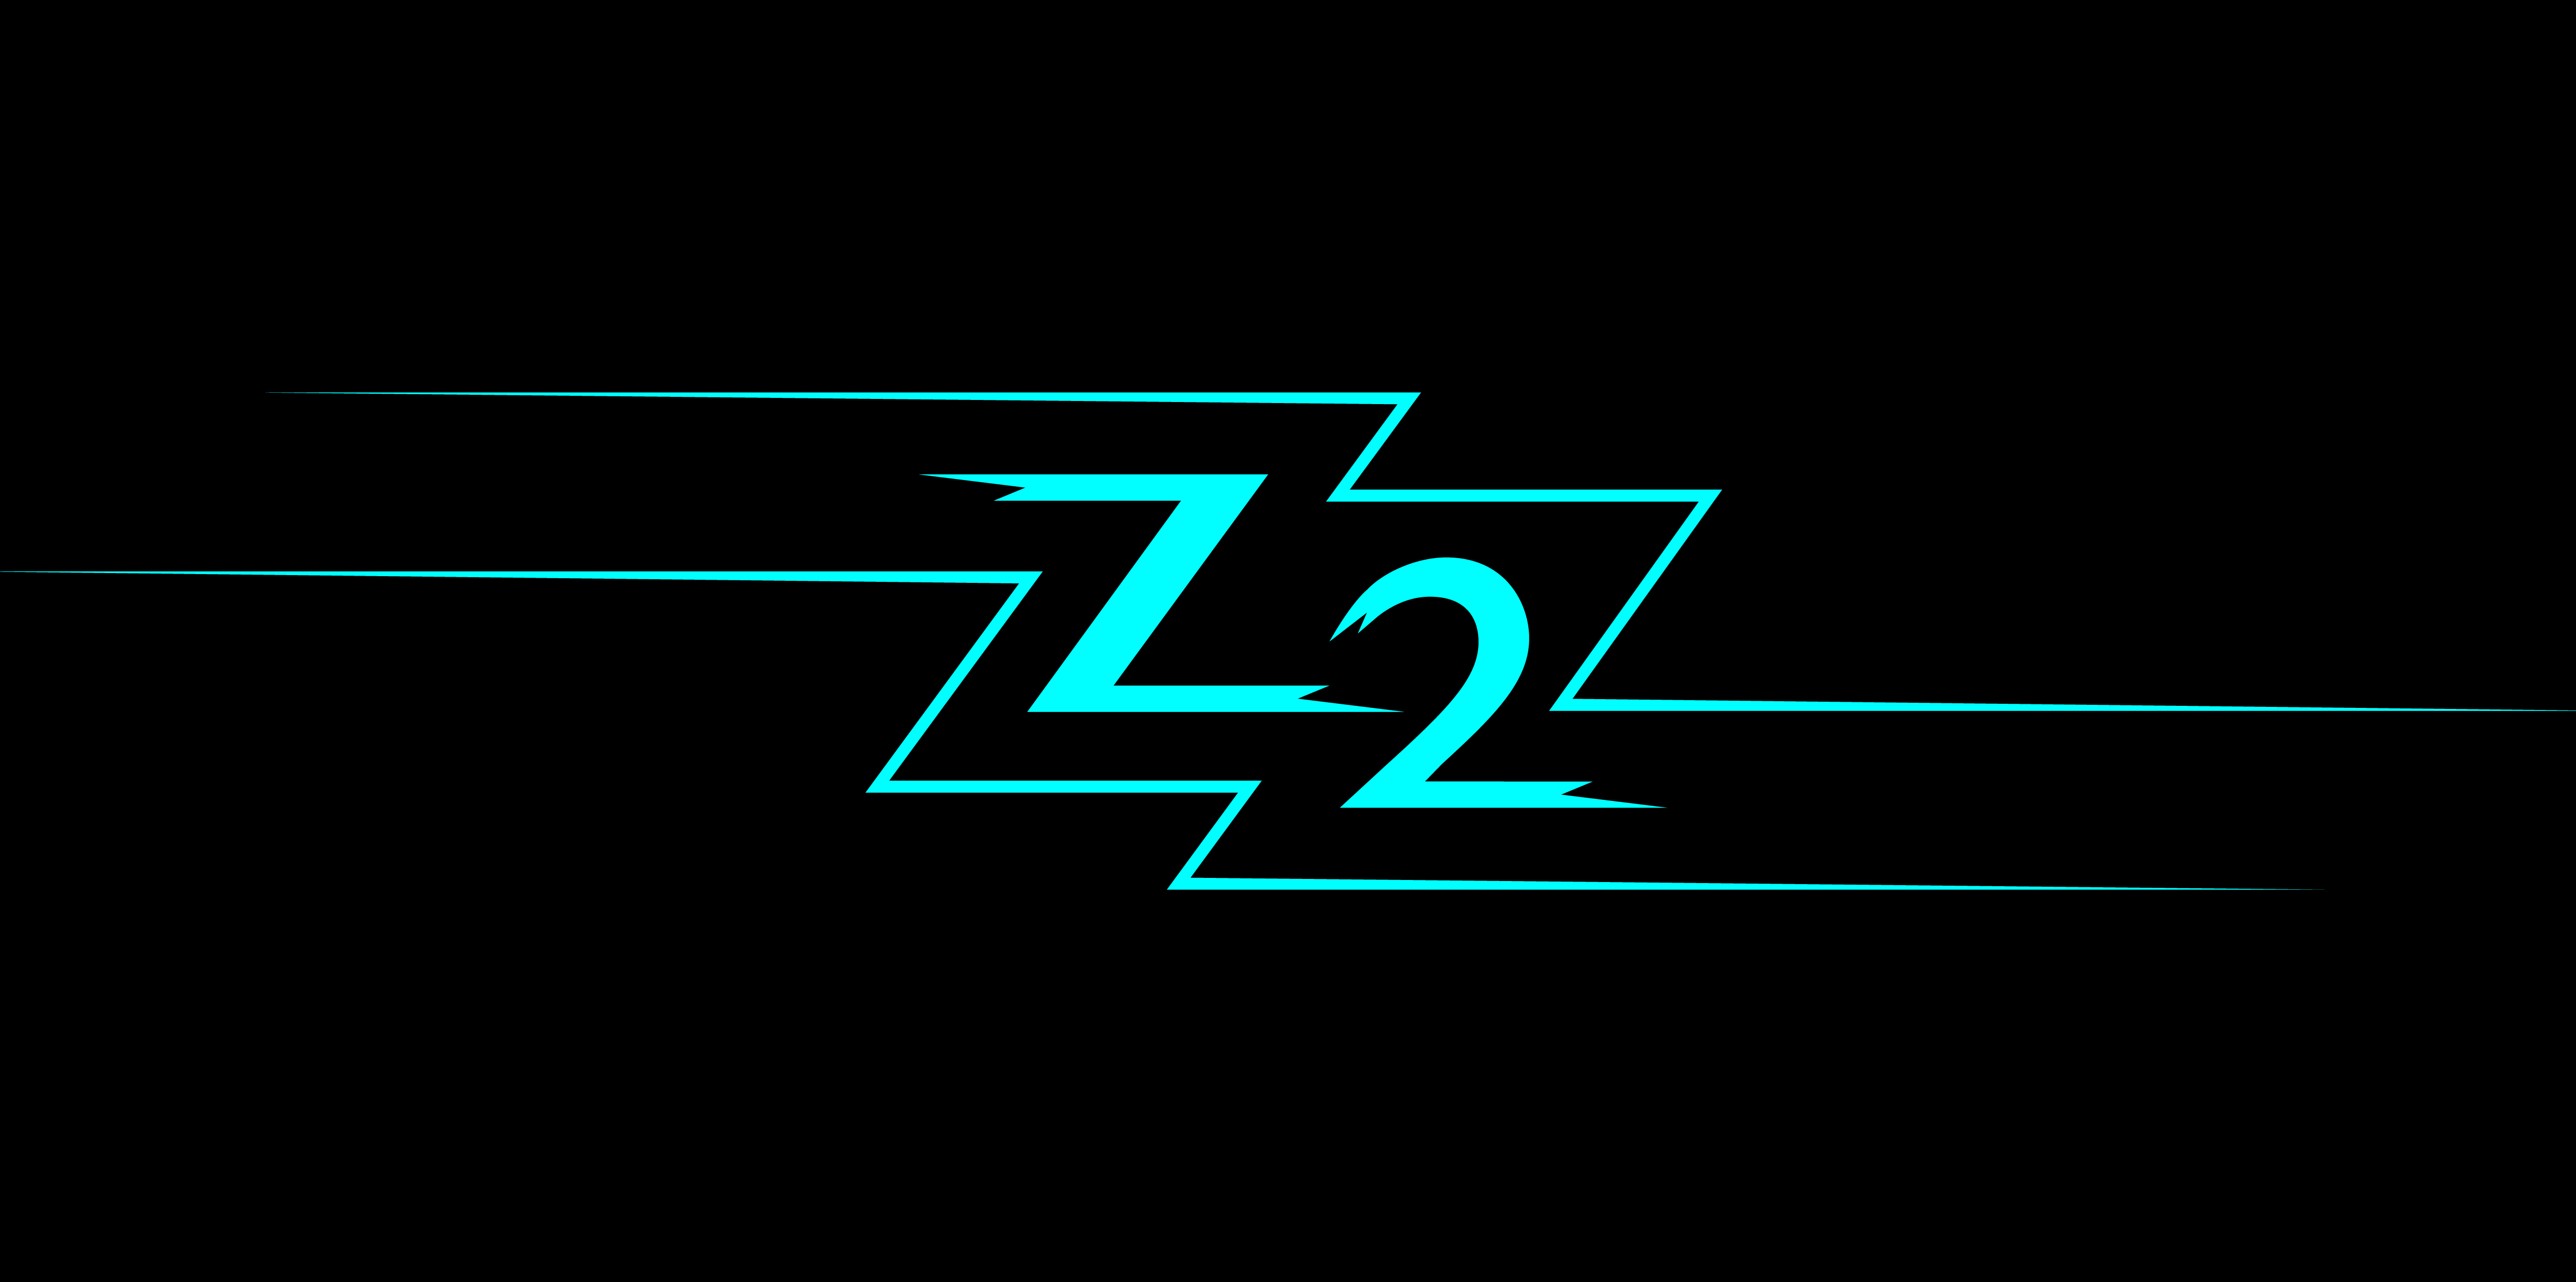 Z2 long